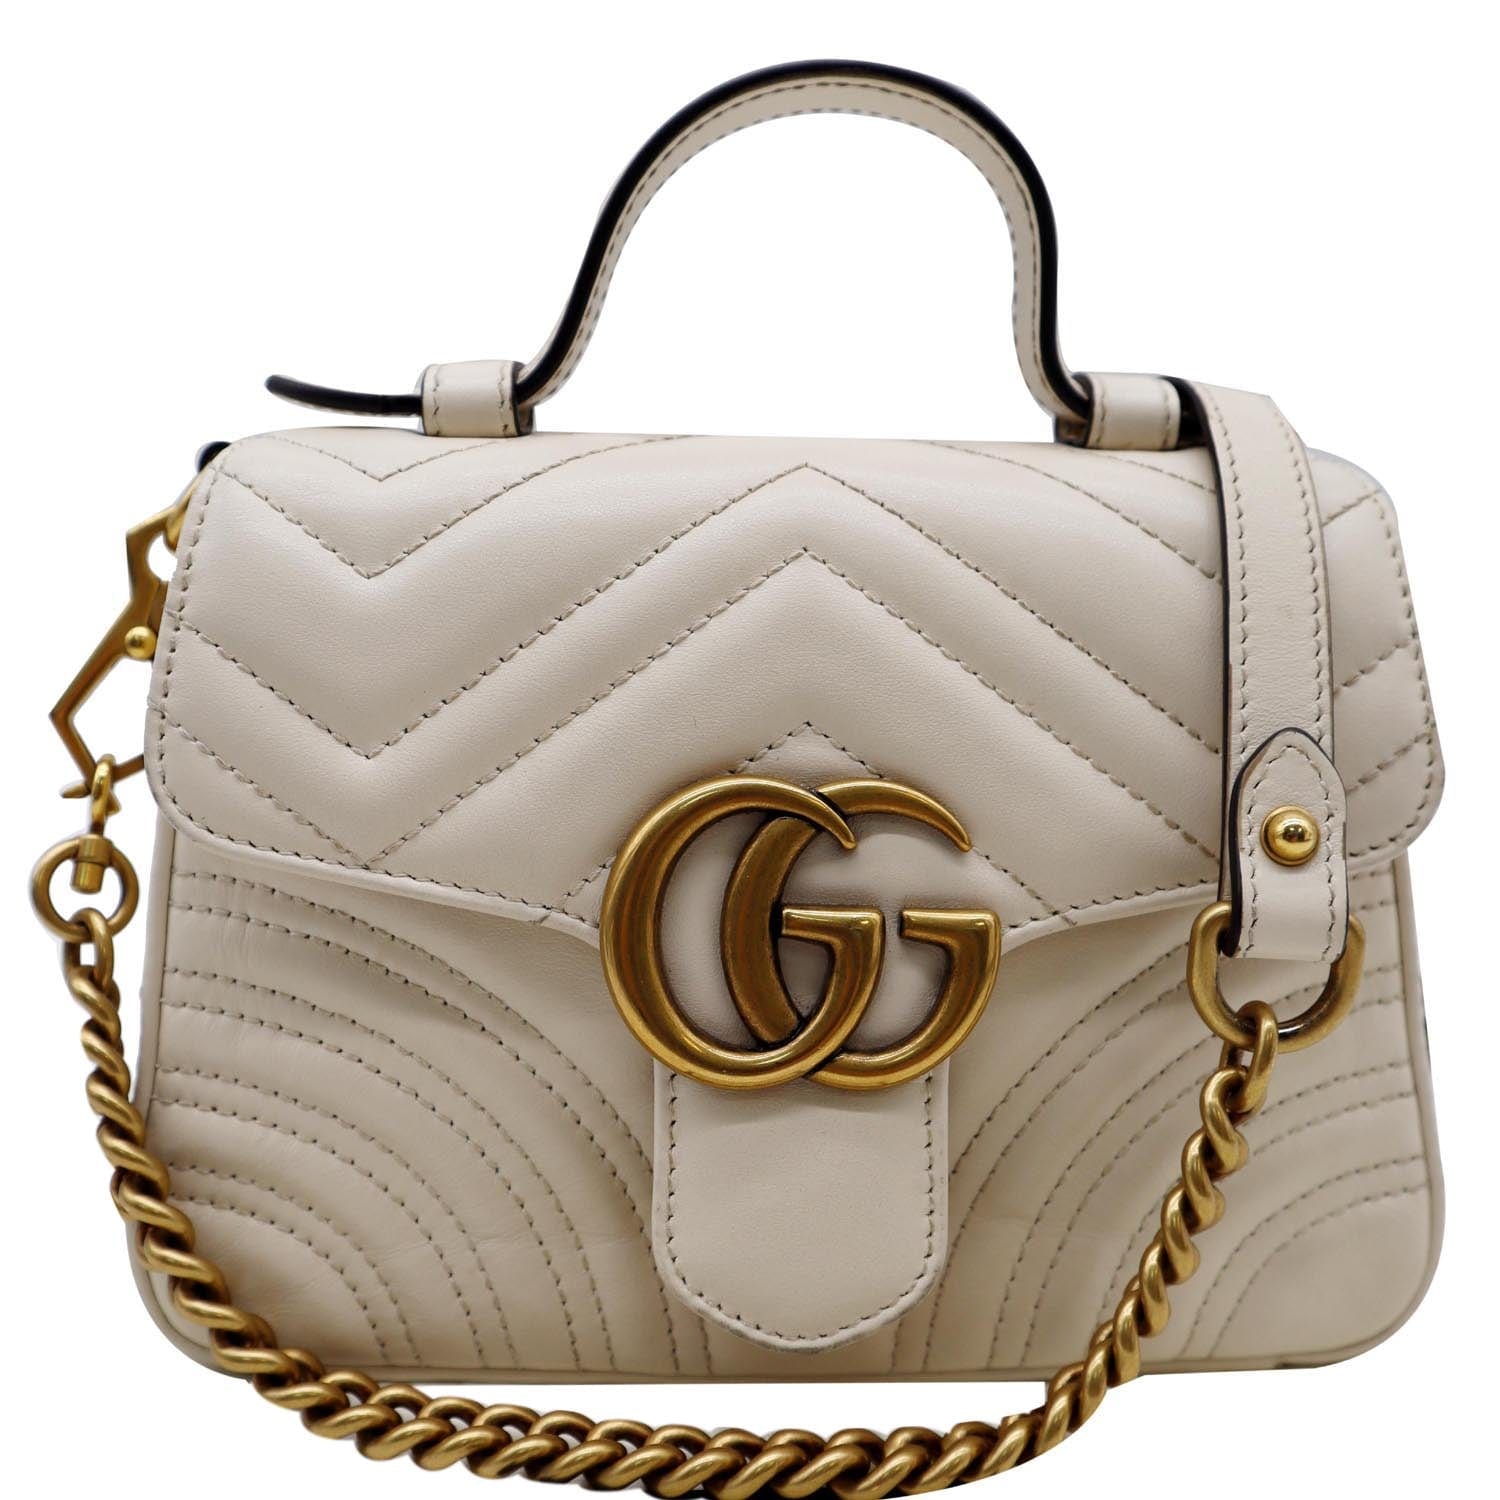 Gucci Marmont Mini Bag White